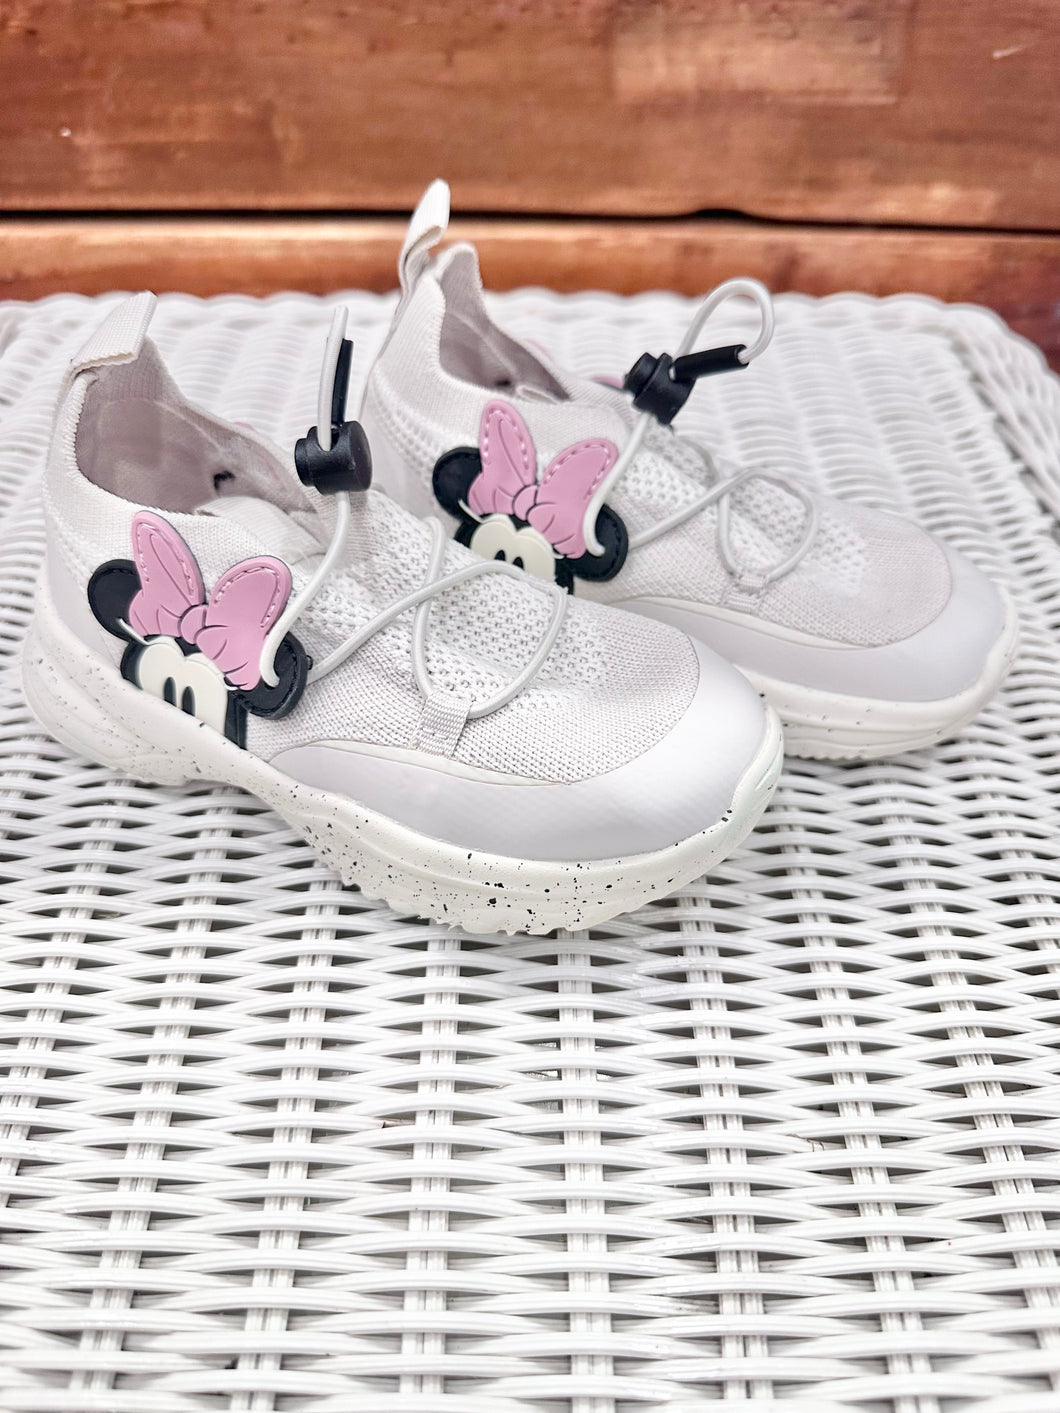 Zara x Disney Minnie Shoes Size 7